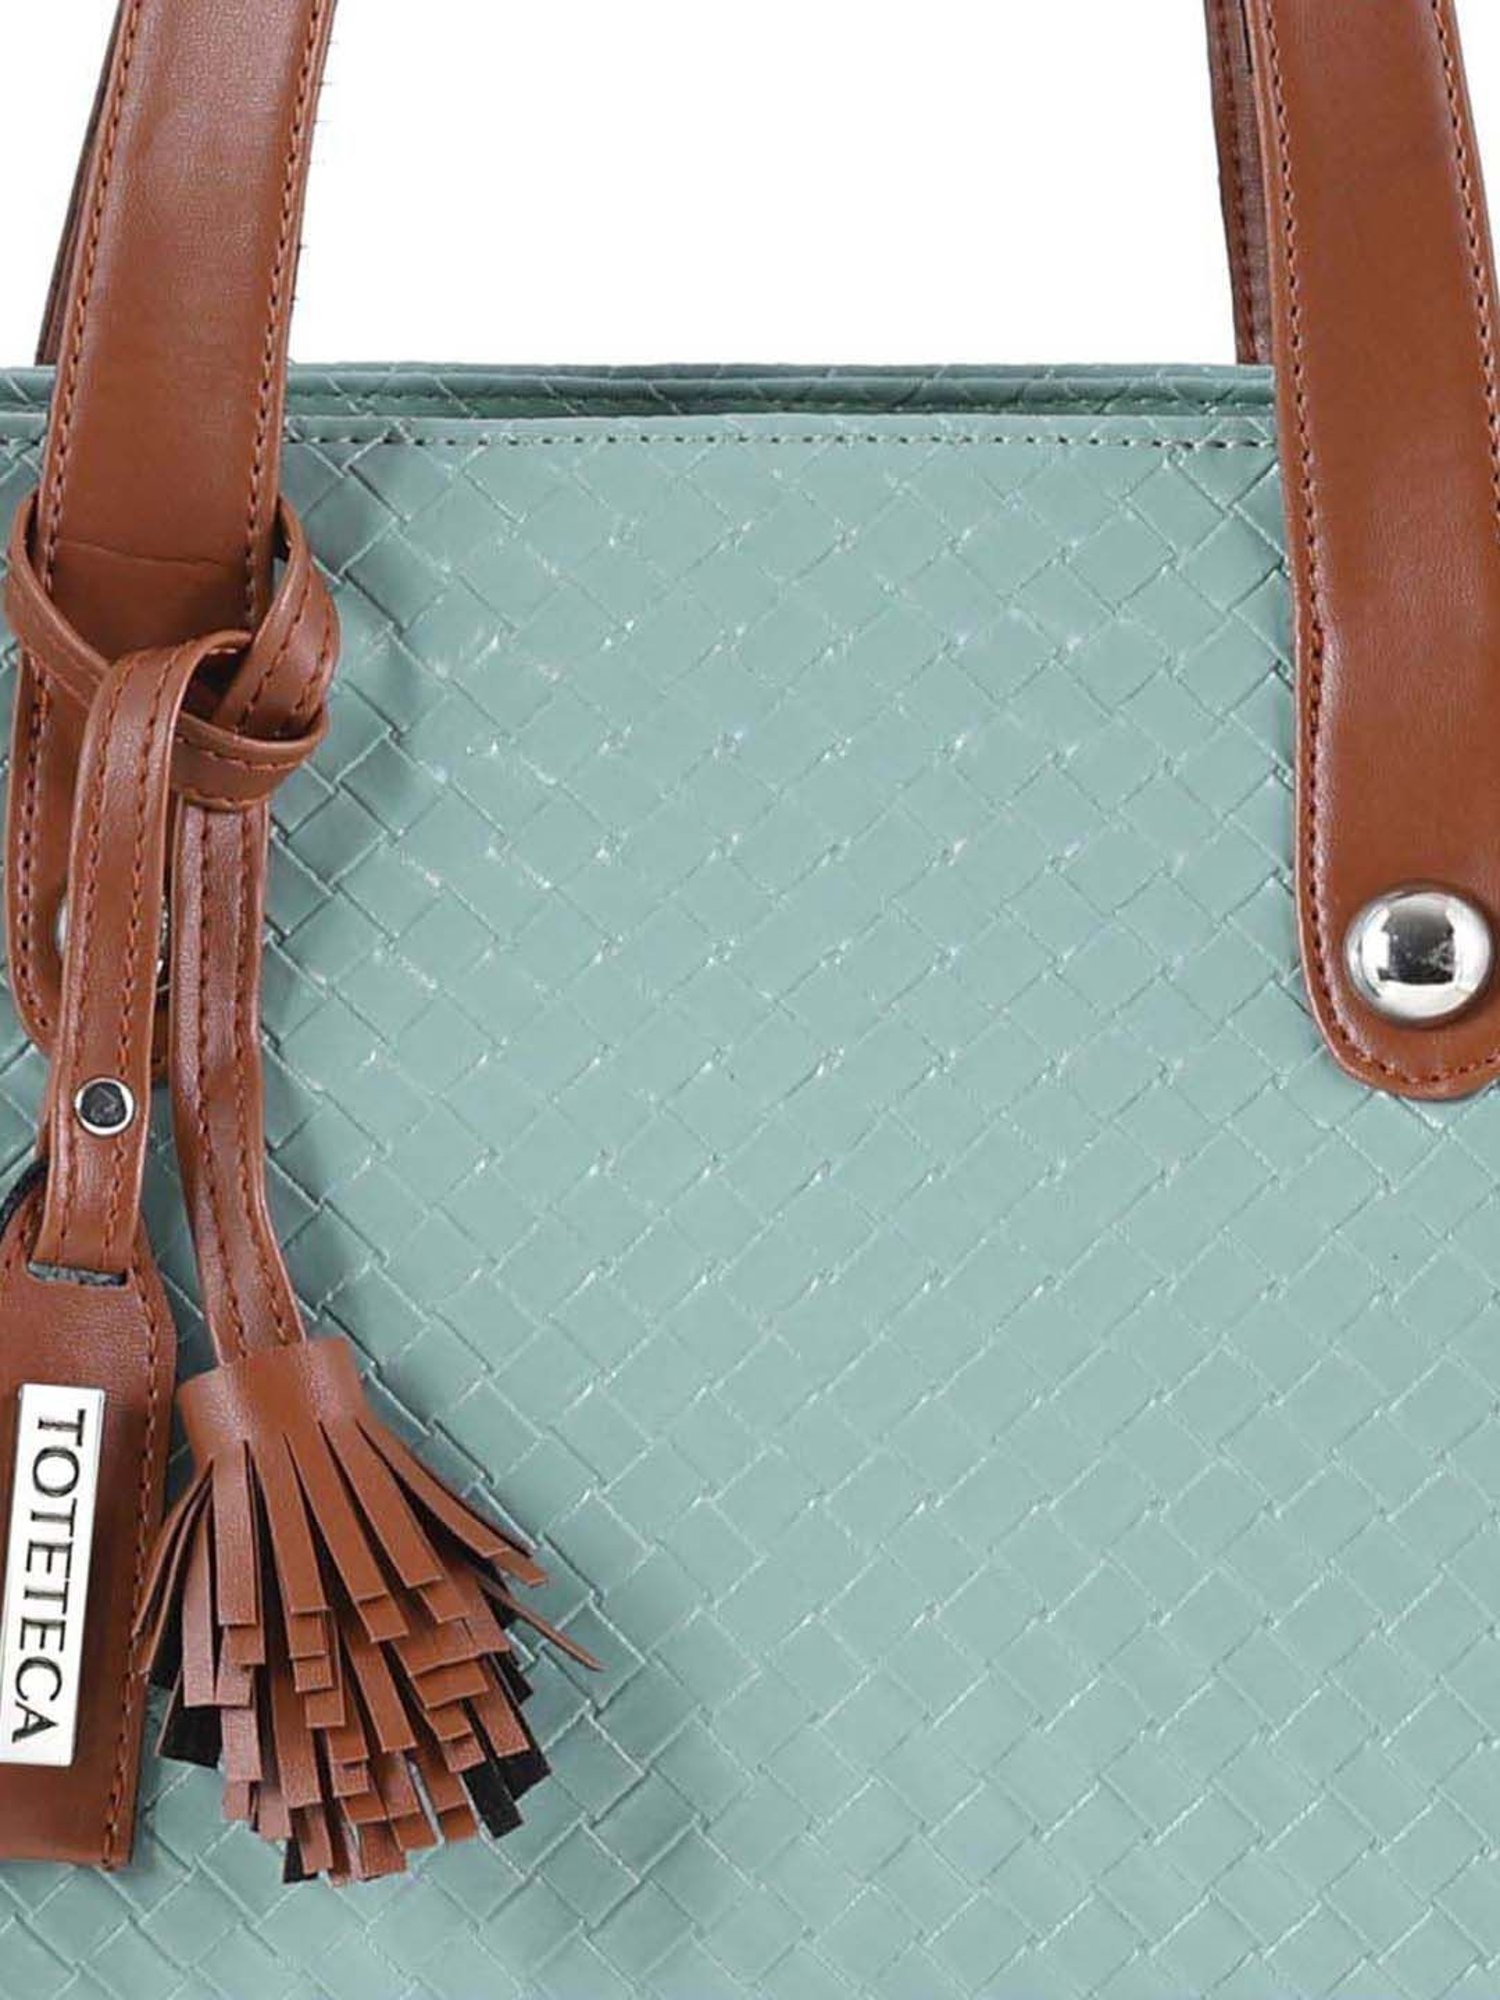 Toteteca Tote bags : Buy Toteteca Double Zip Tote Bag Online